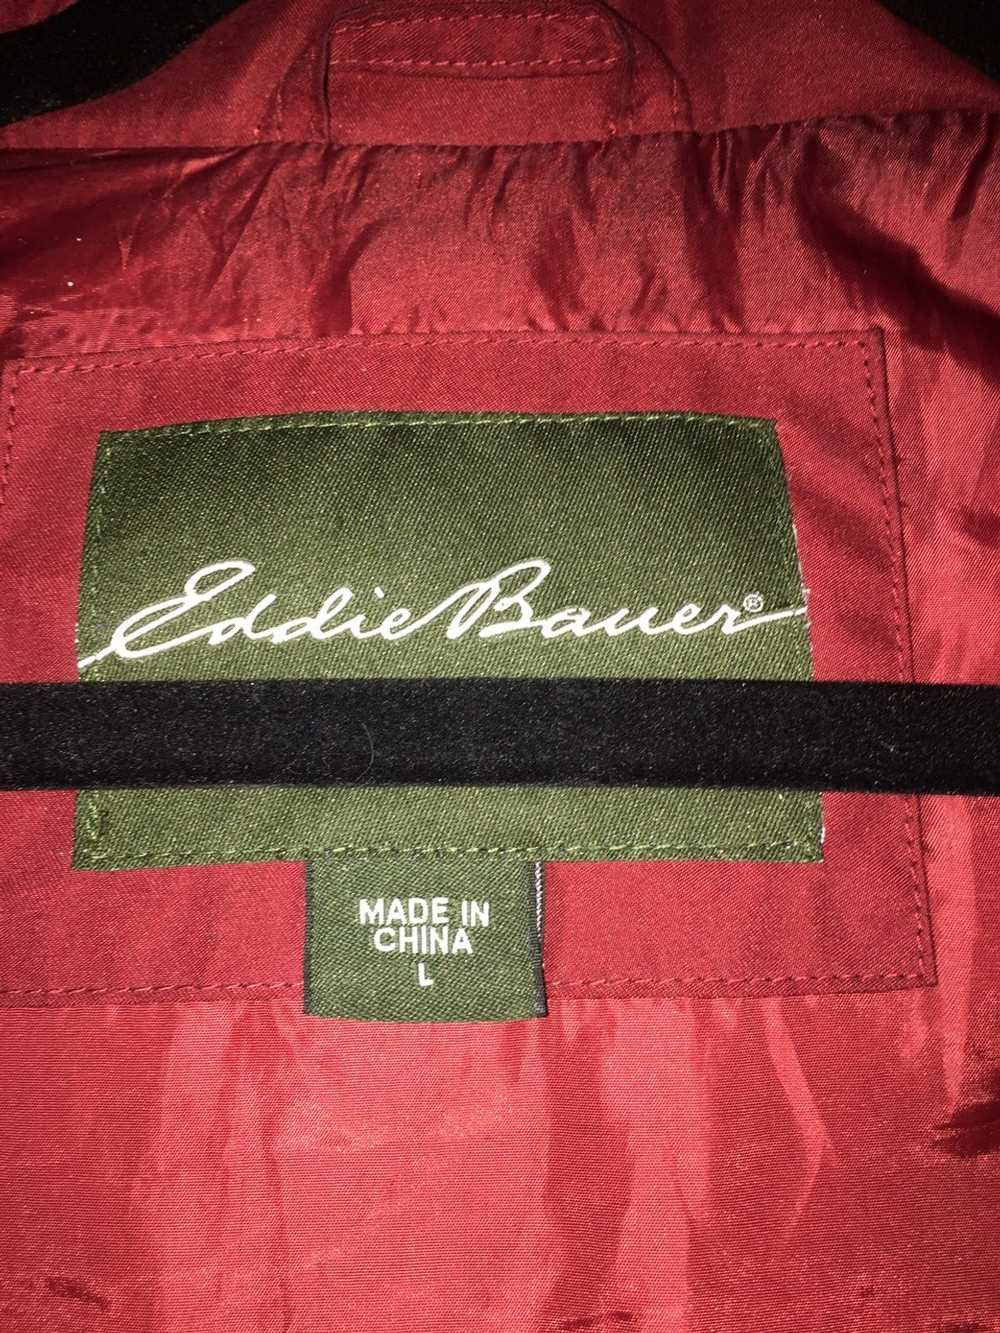 Eddie Bauer Eddie Bauer EB550 Premium Down Vest - image 3